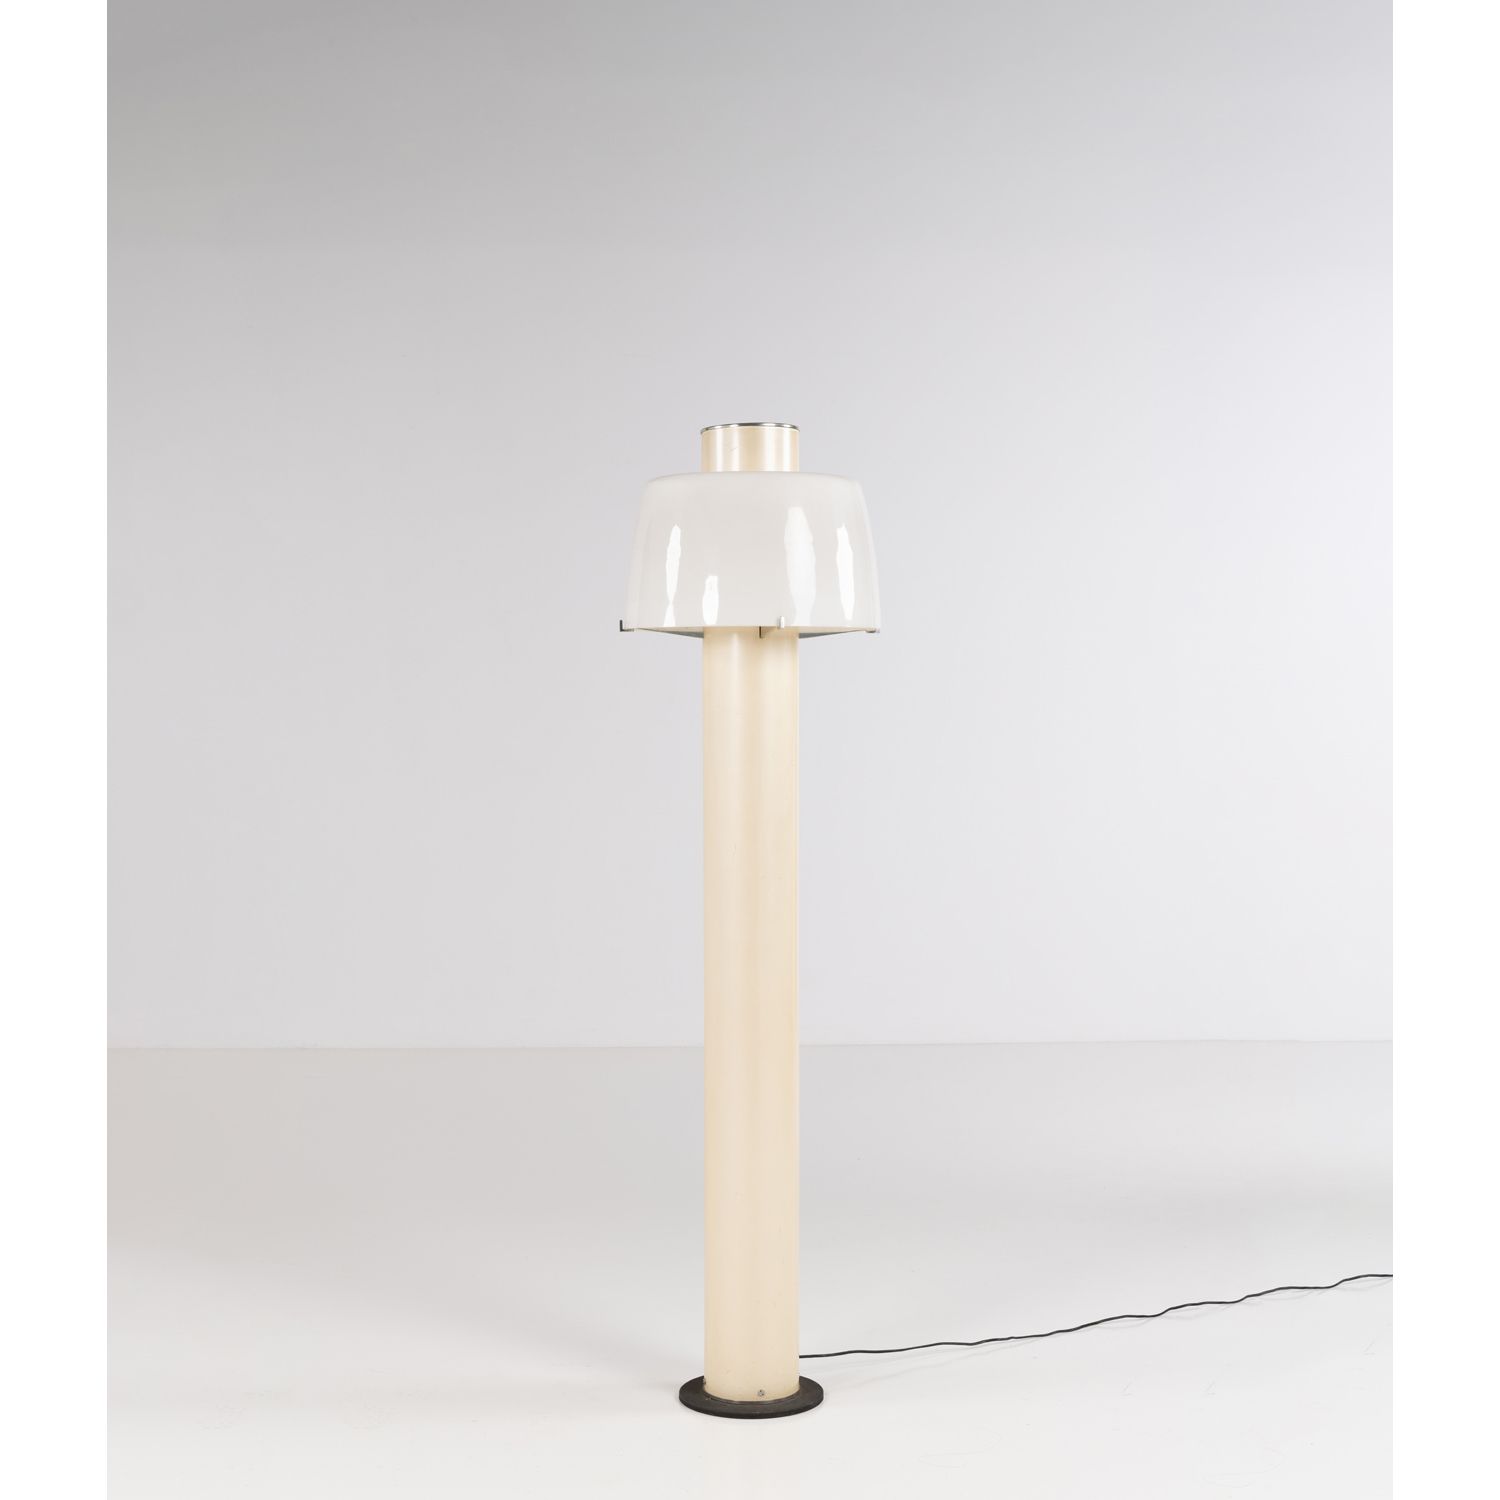 Null Gino Sarfatti (1912-1985)

Modell Nr. 1006

Stehlampe

Aluminiumguss, Alumi&hellip;